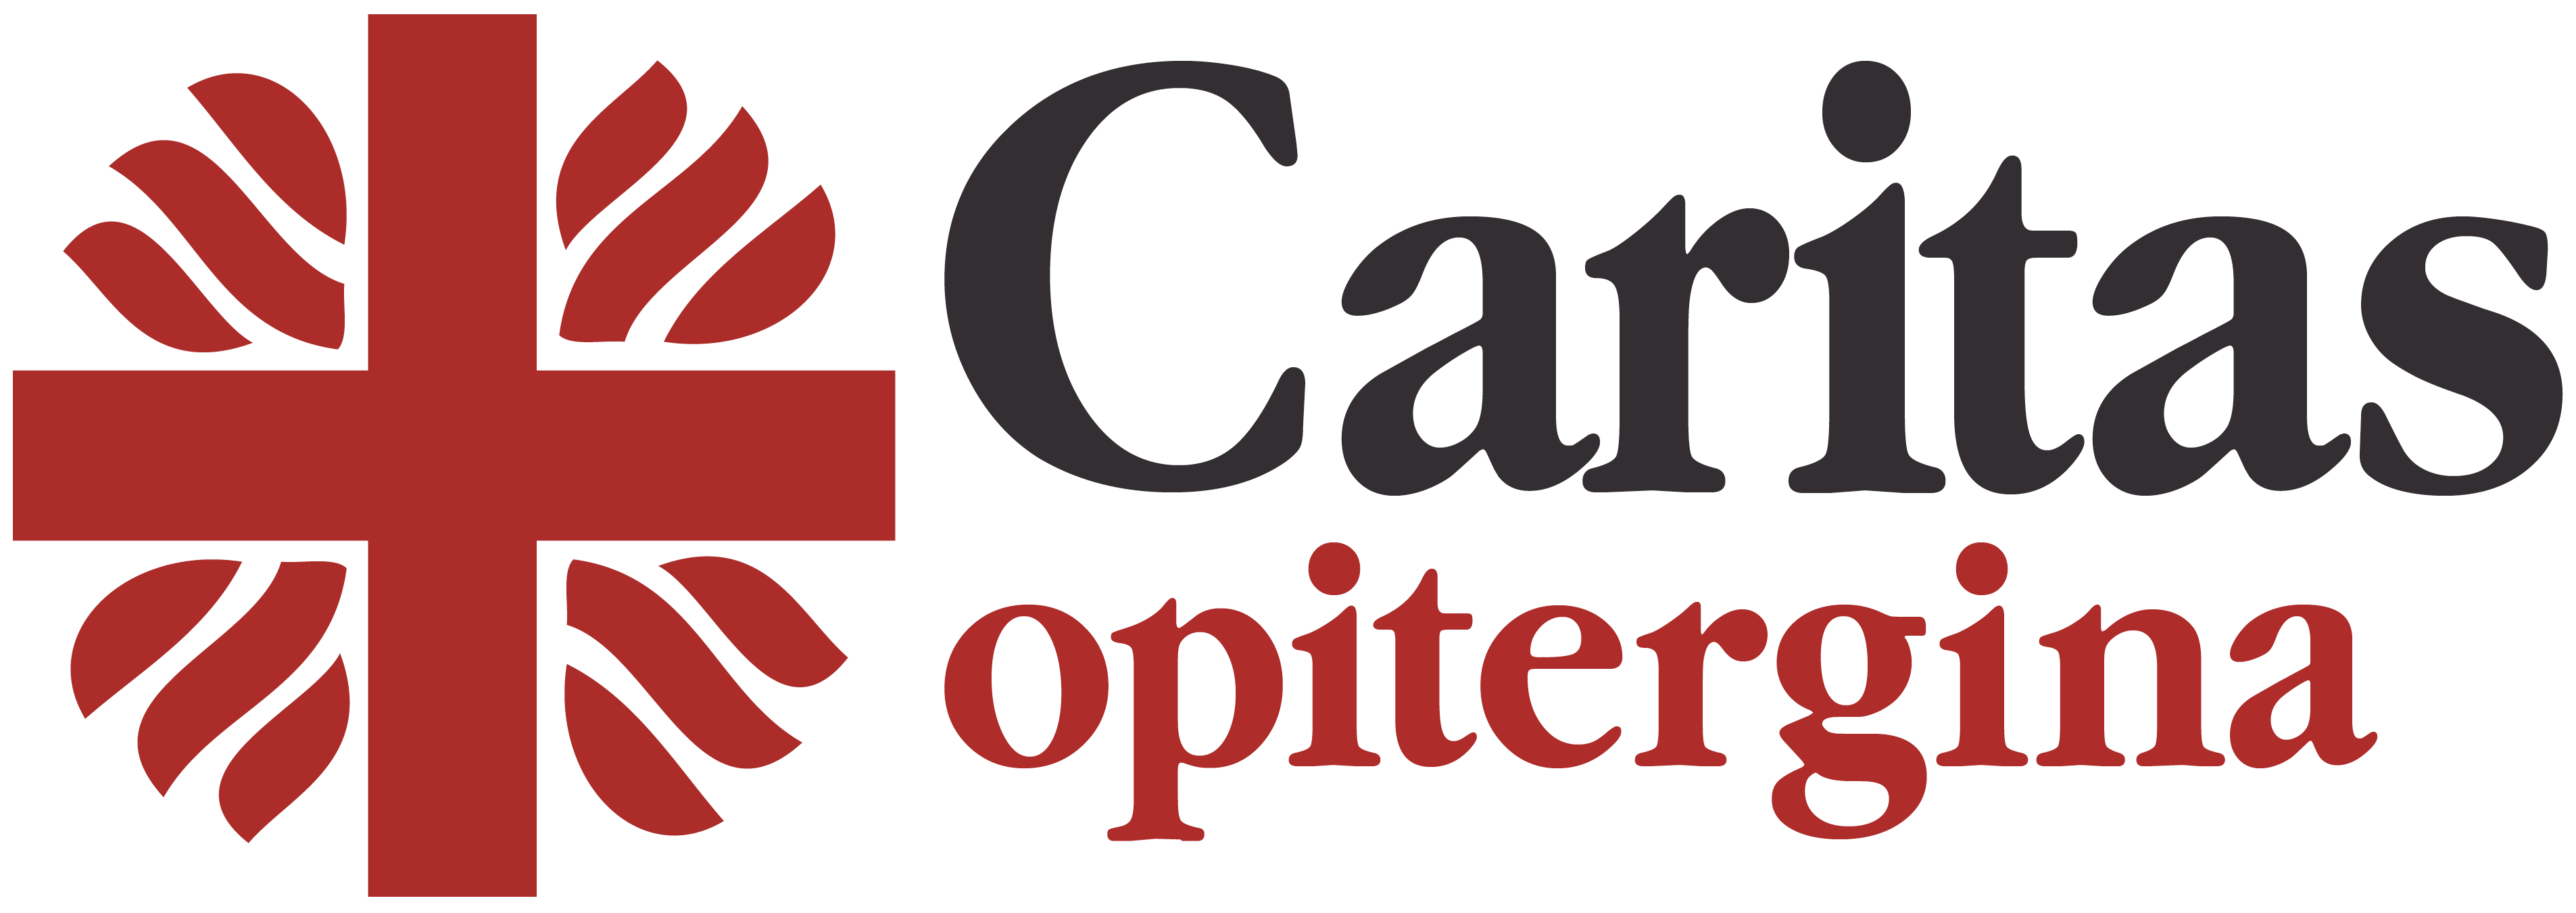 Caritas opitergina logo